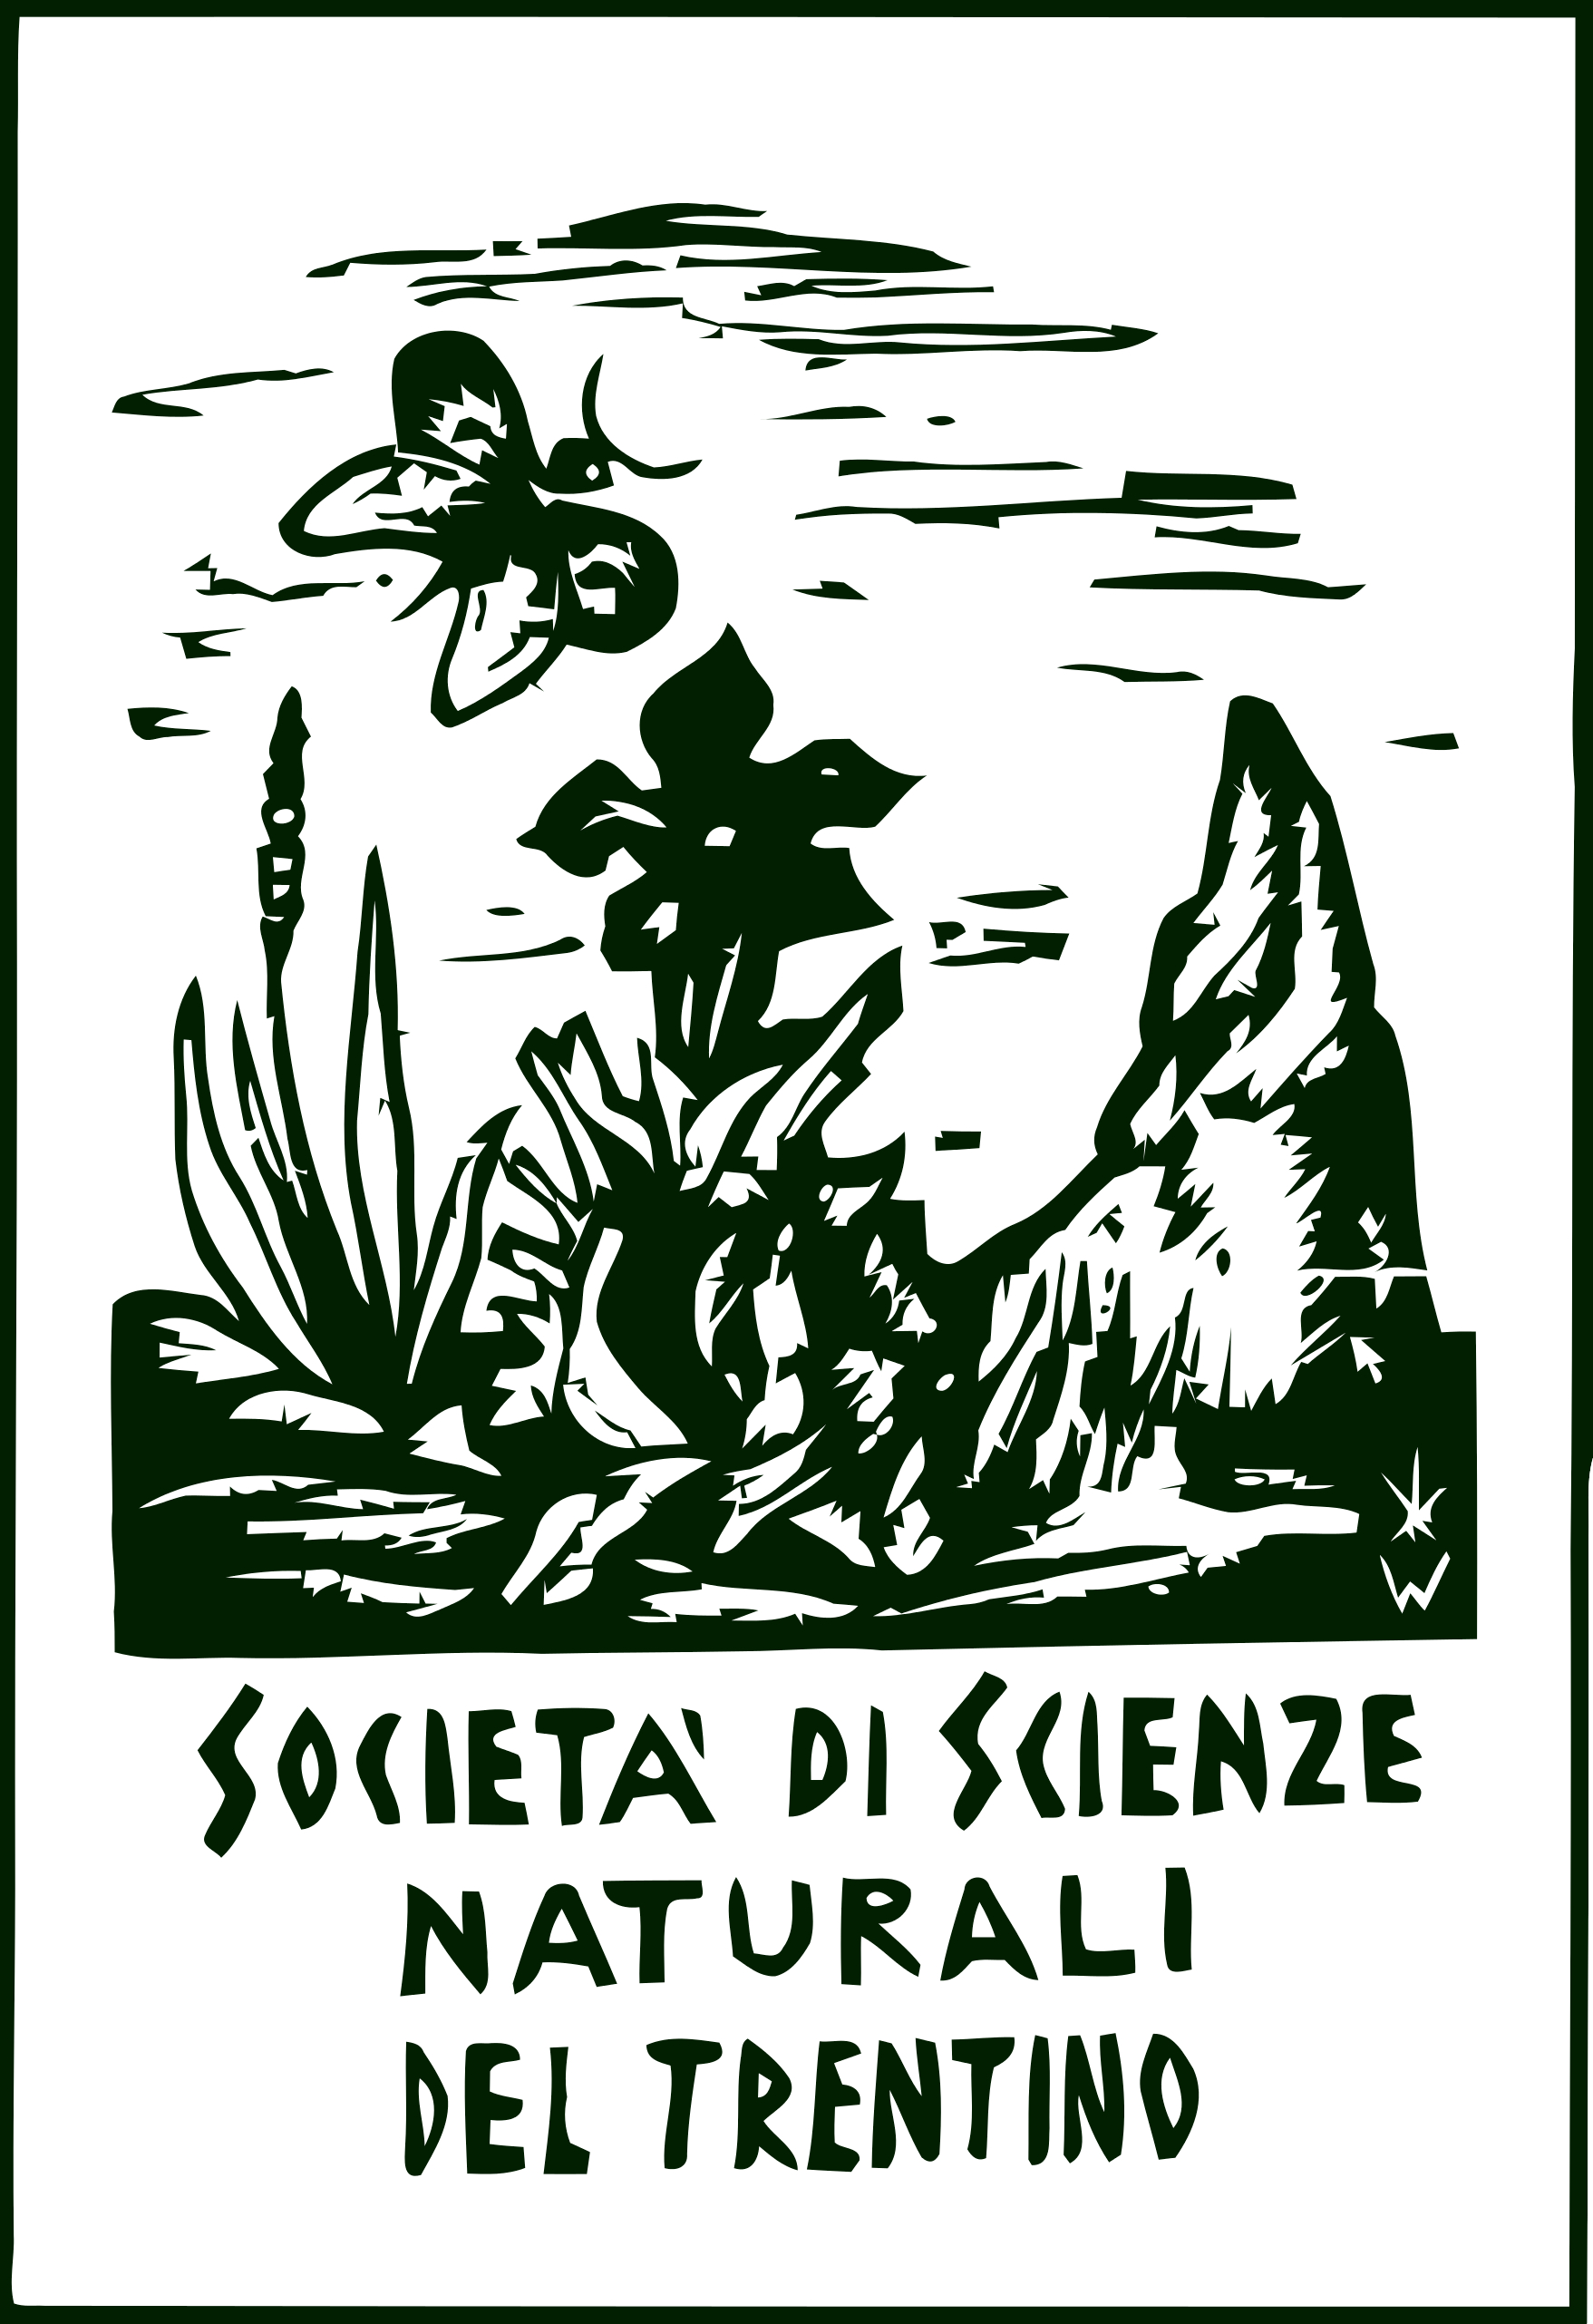 Il logo della Società